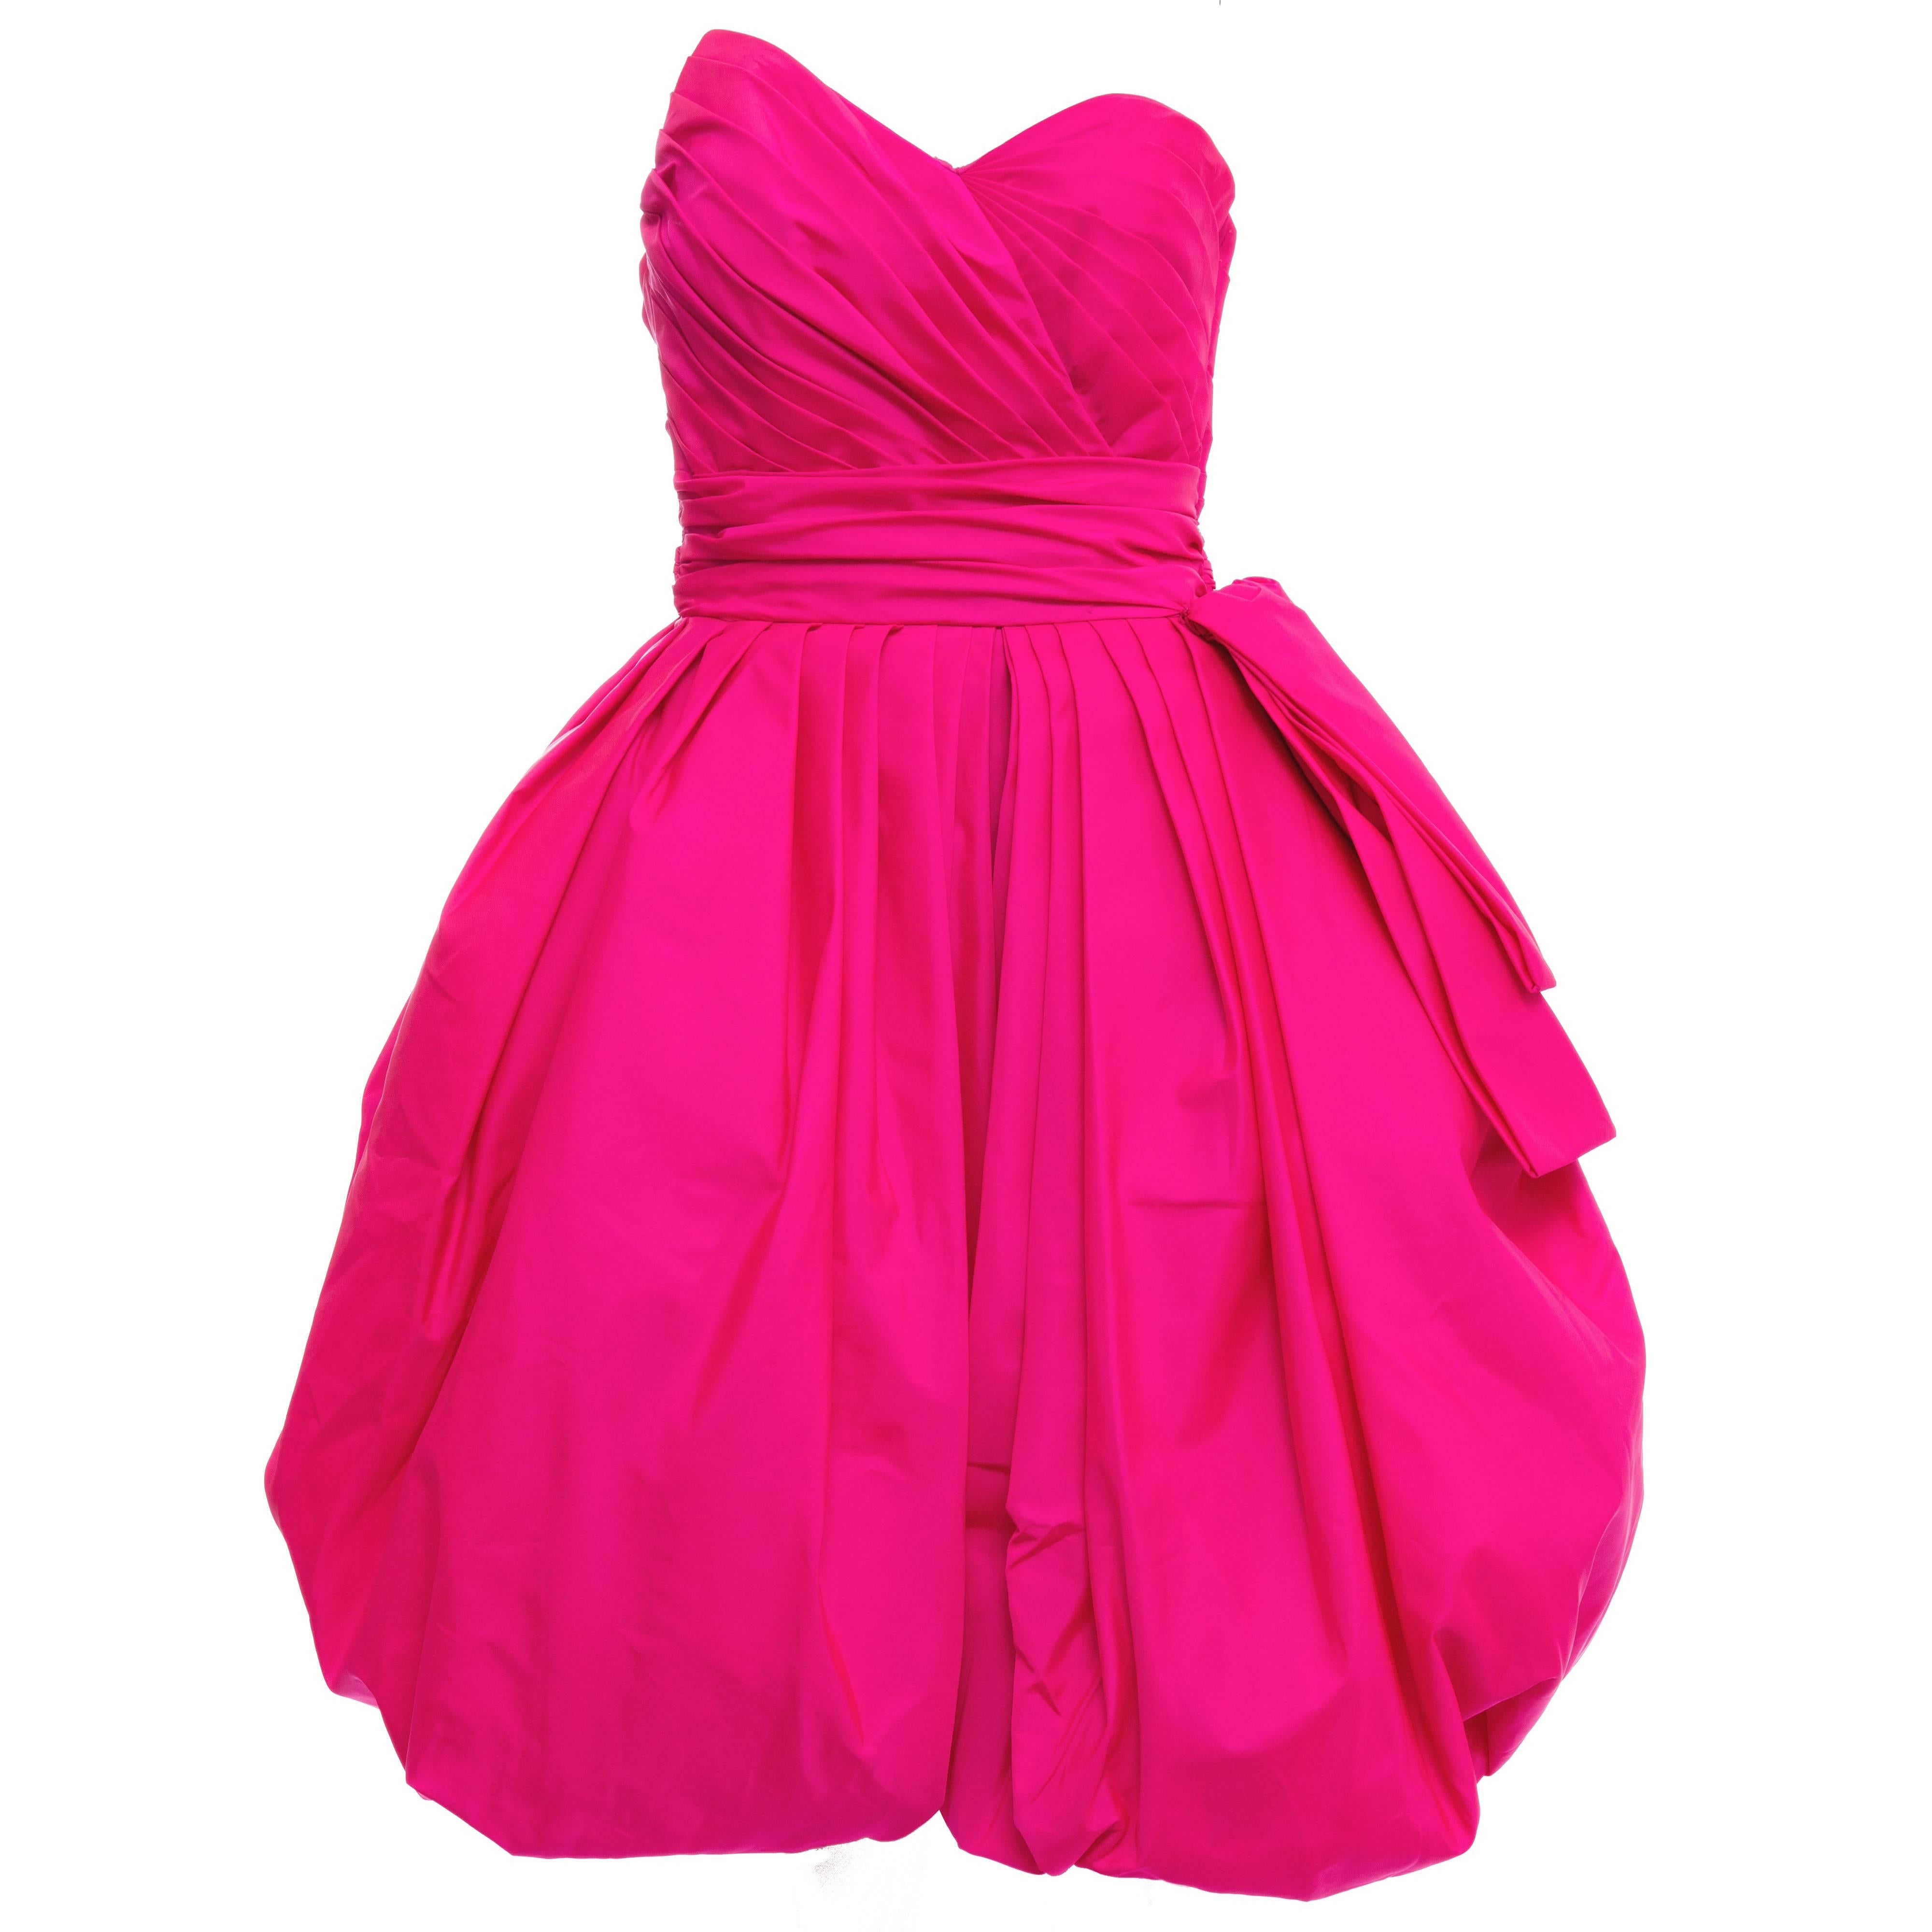 Victor Costa Fluorescent Pink Strapless Taffeta Bubble Party Dress, Circa 1980's